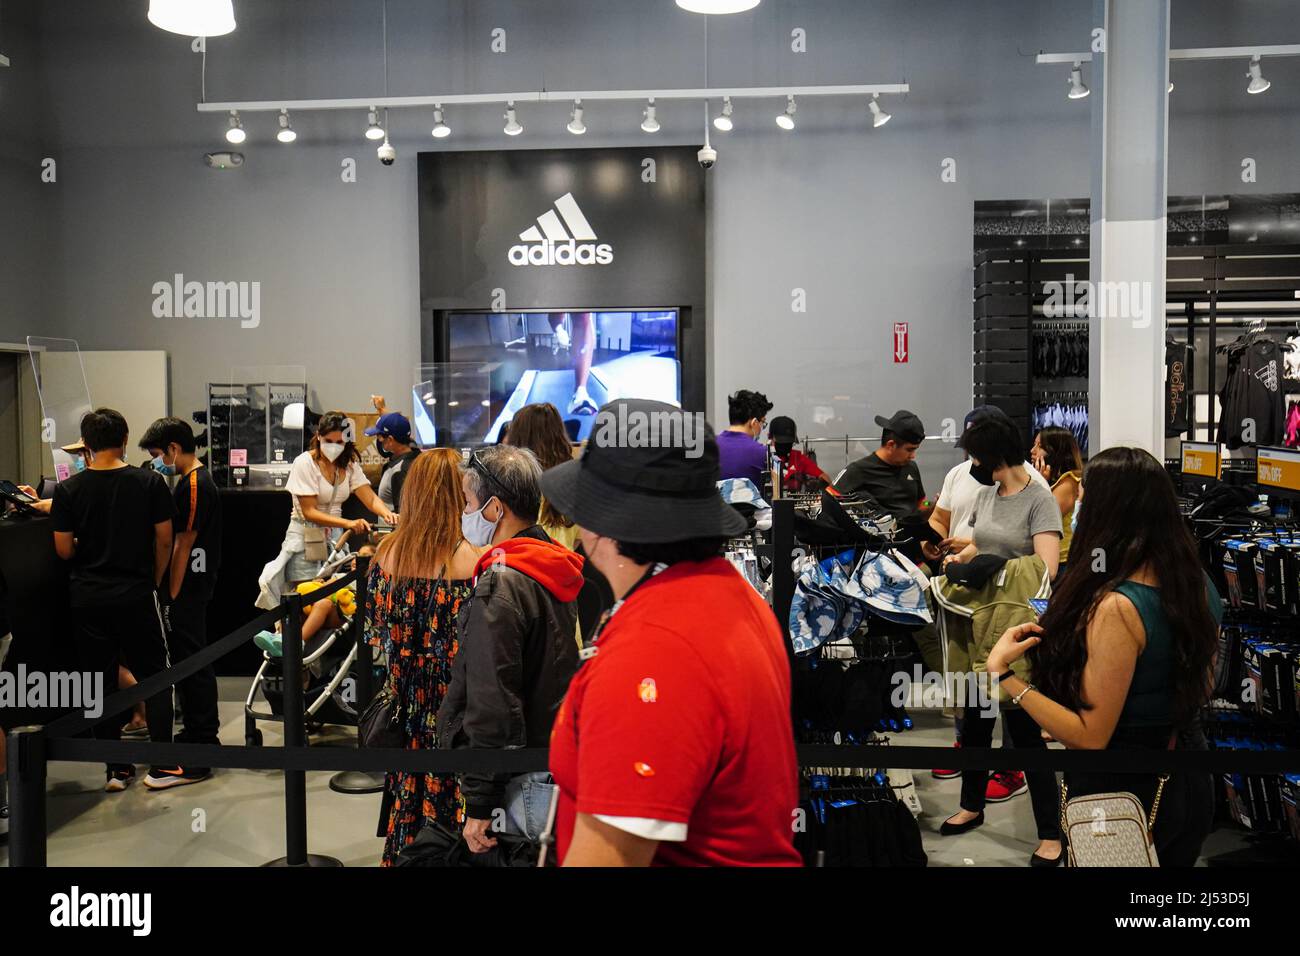 La gente ir de compras dentro de una tienda Adidas en el Outlets en Orange. Mucha gente compra en tiendas en Orange, para ropa, zapatos, relojes, bolsas, y mochilas con